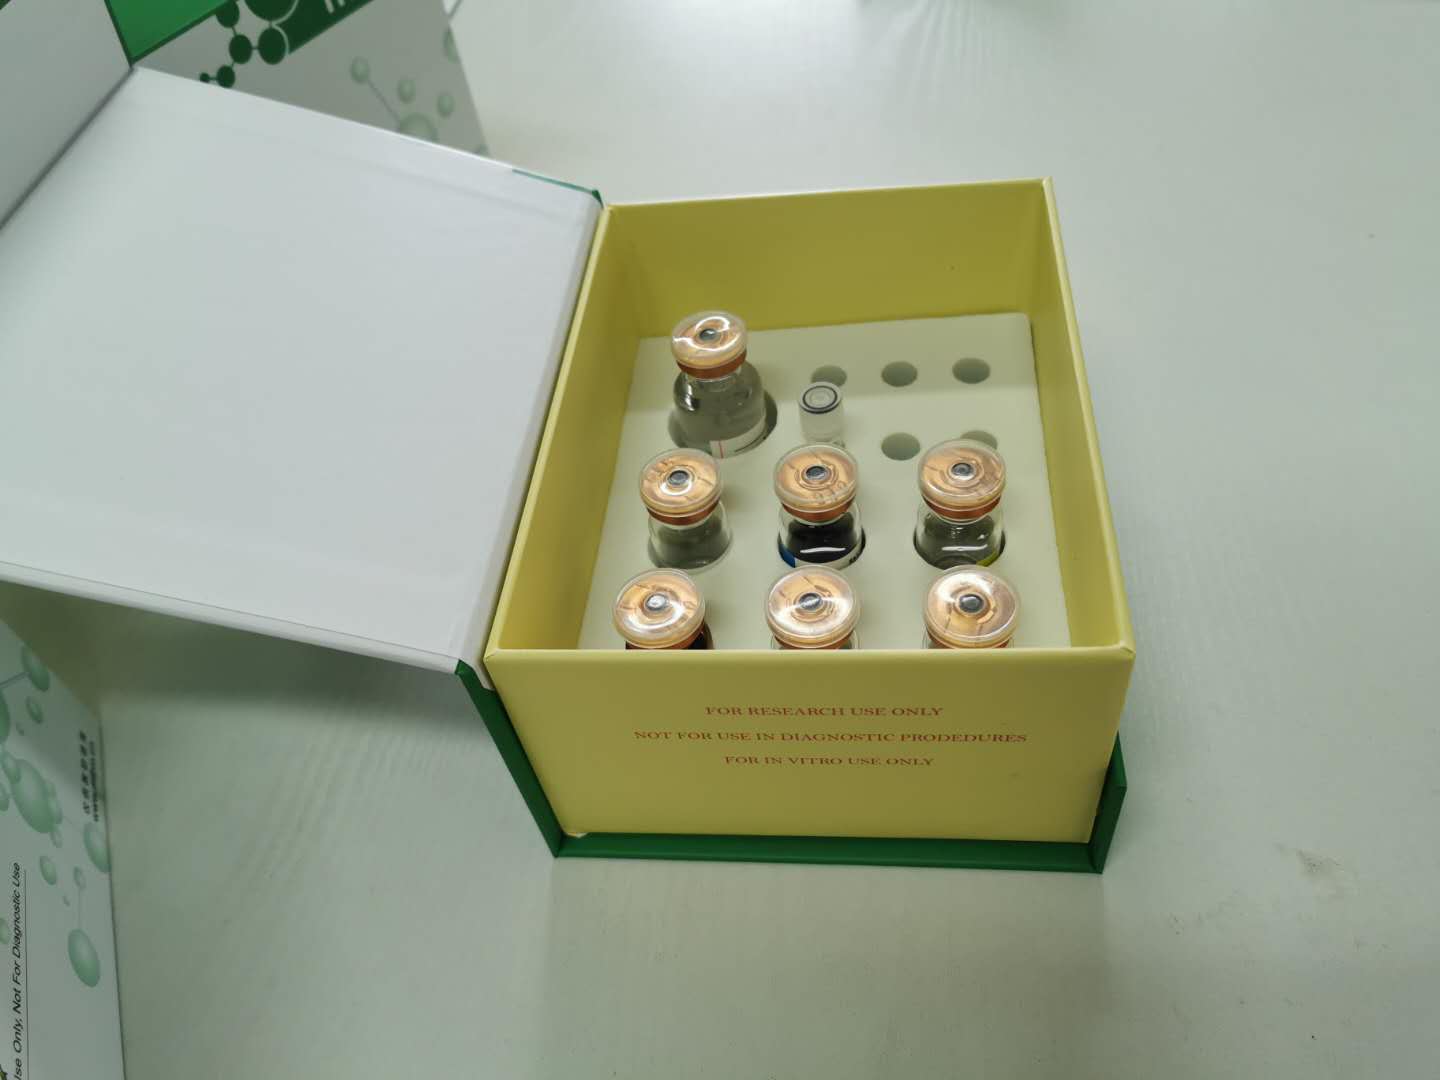 新品推荐-小鼠汉坦病毒(HV) ELISA kit